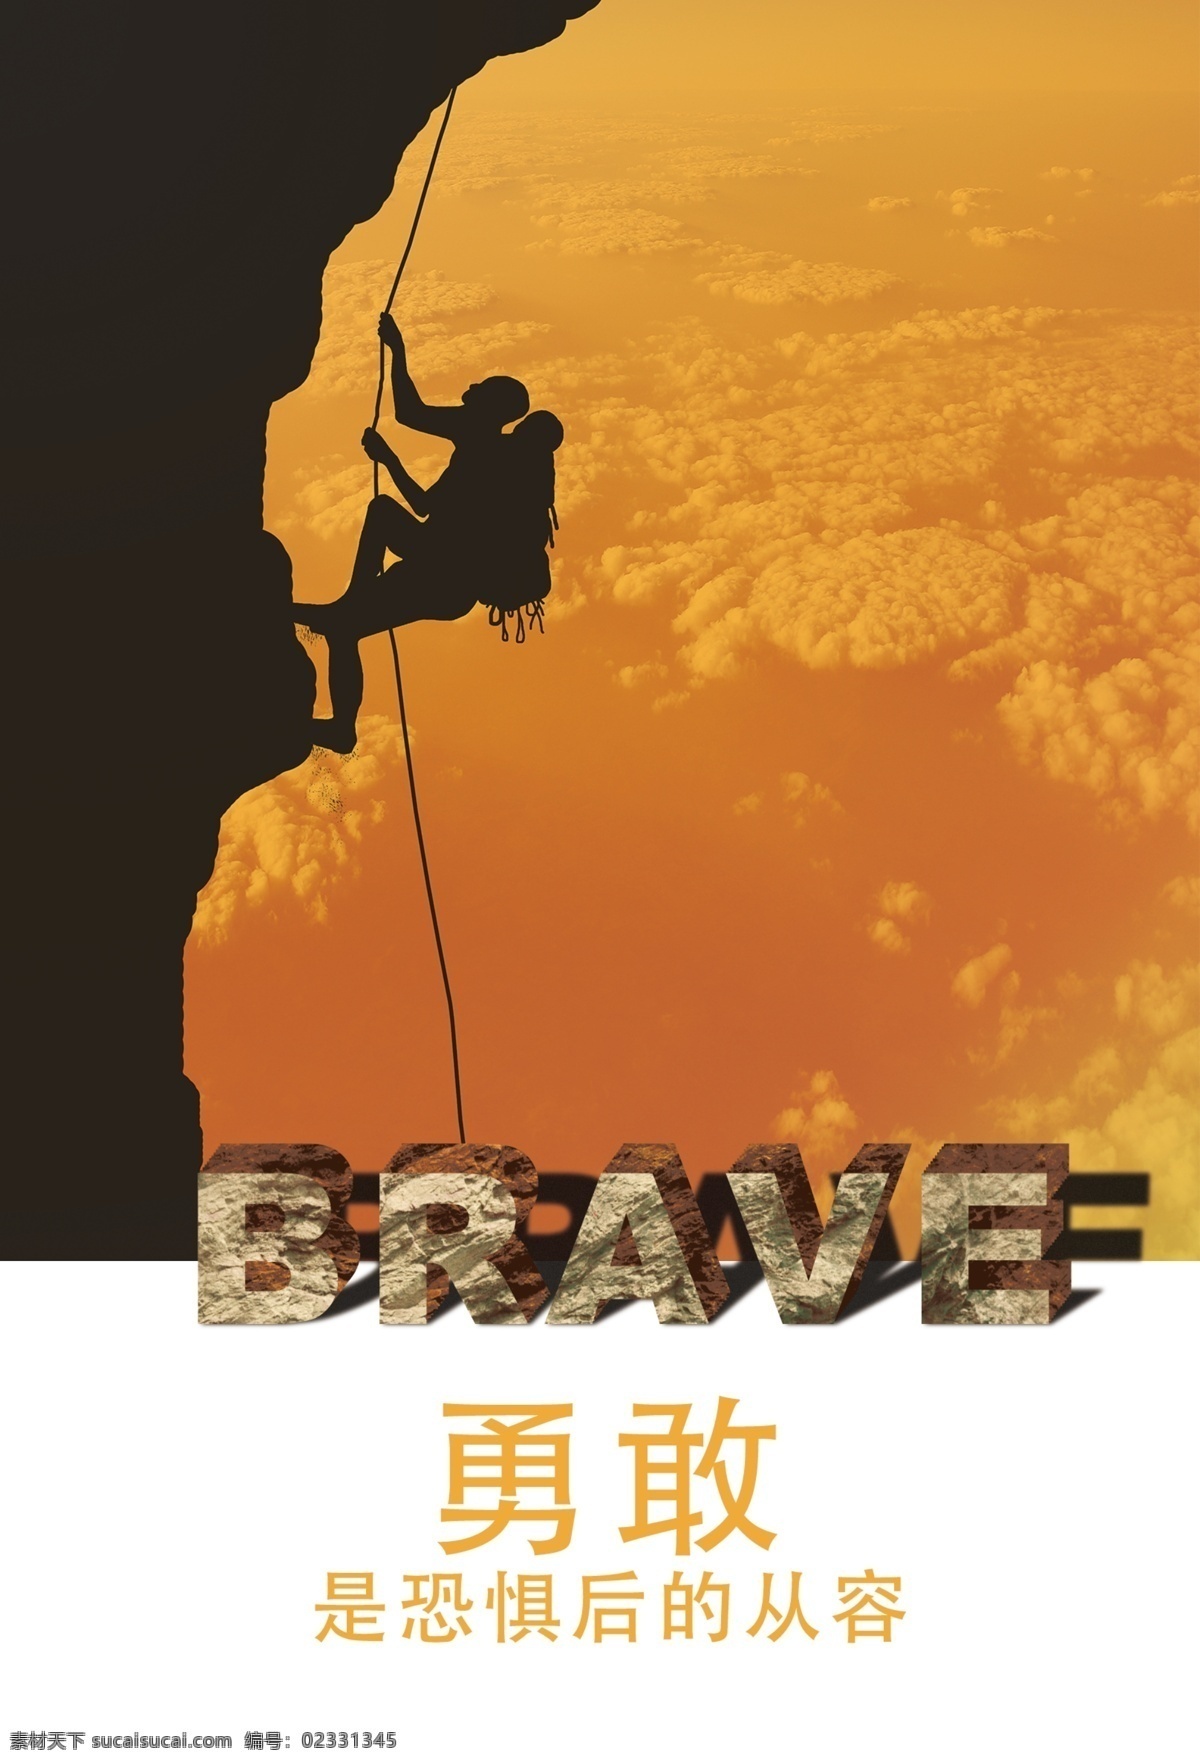 勇者 户外 攀岩 系列 海报 原创 山峰